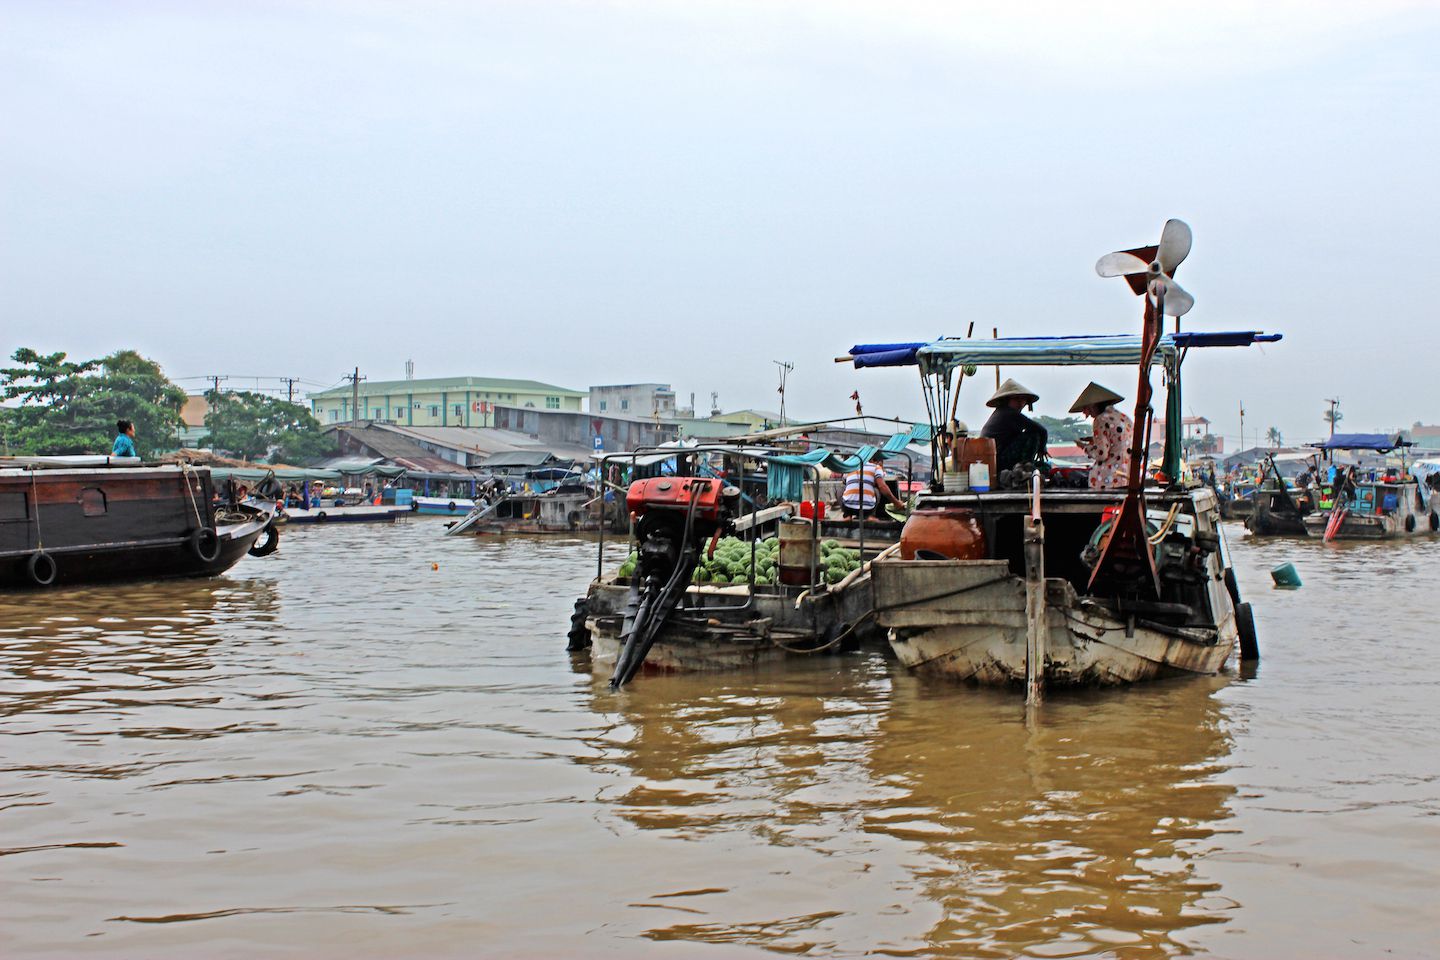 Trading boats at the Cai Rang floating market